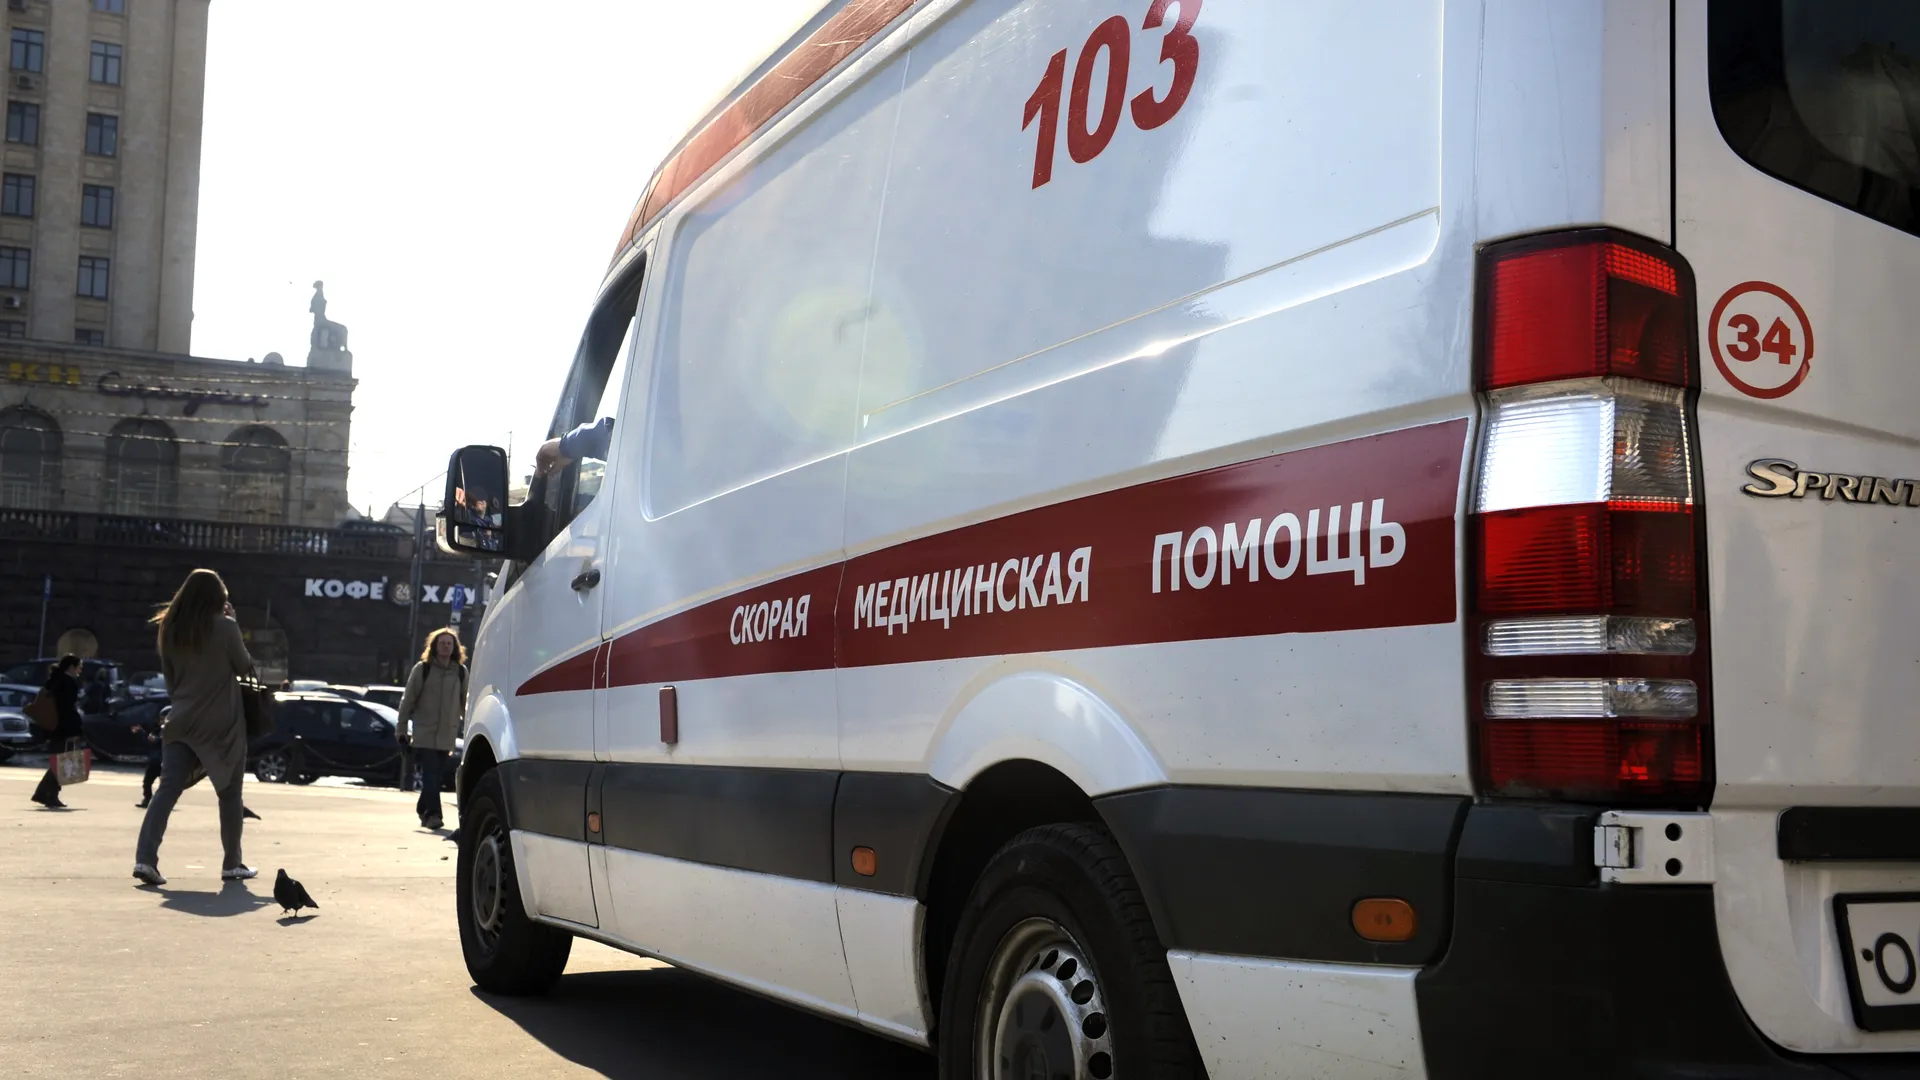 Двое подростков на электросамокате сбили мальчика в Москве